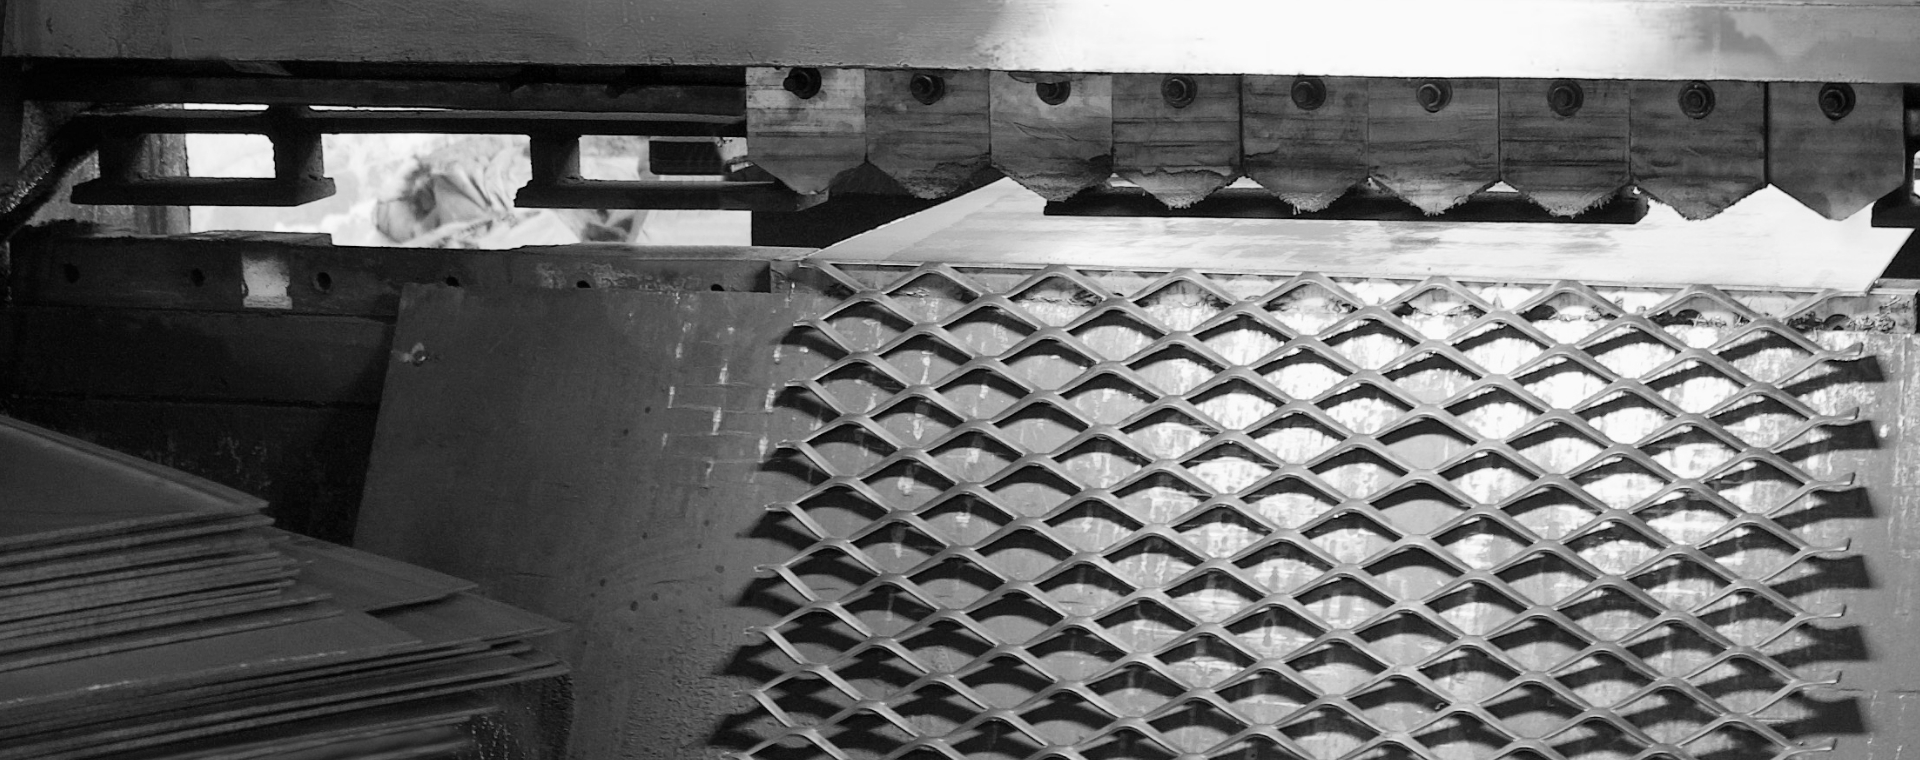 鋼板網機正在將鋼板進行沖壓擴張，制造鋼板網。